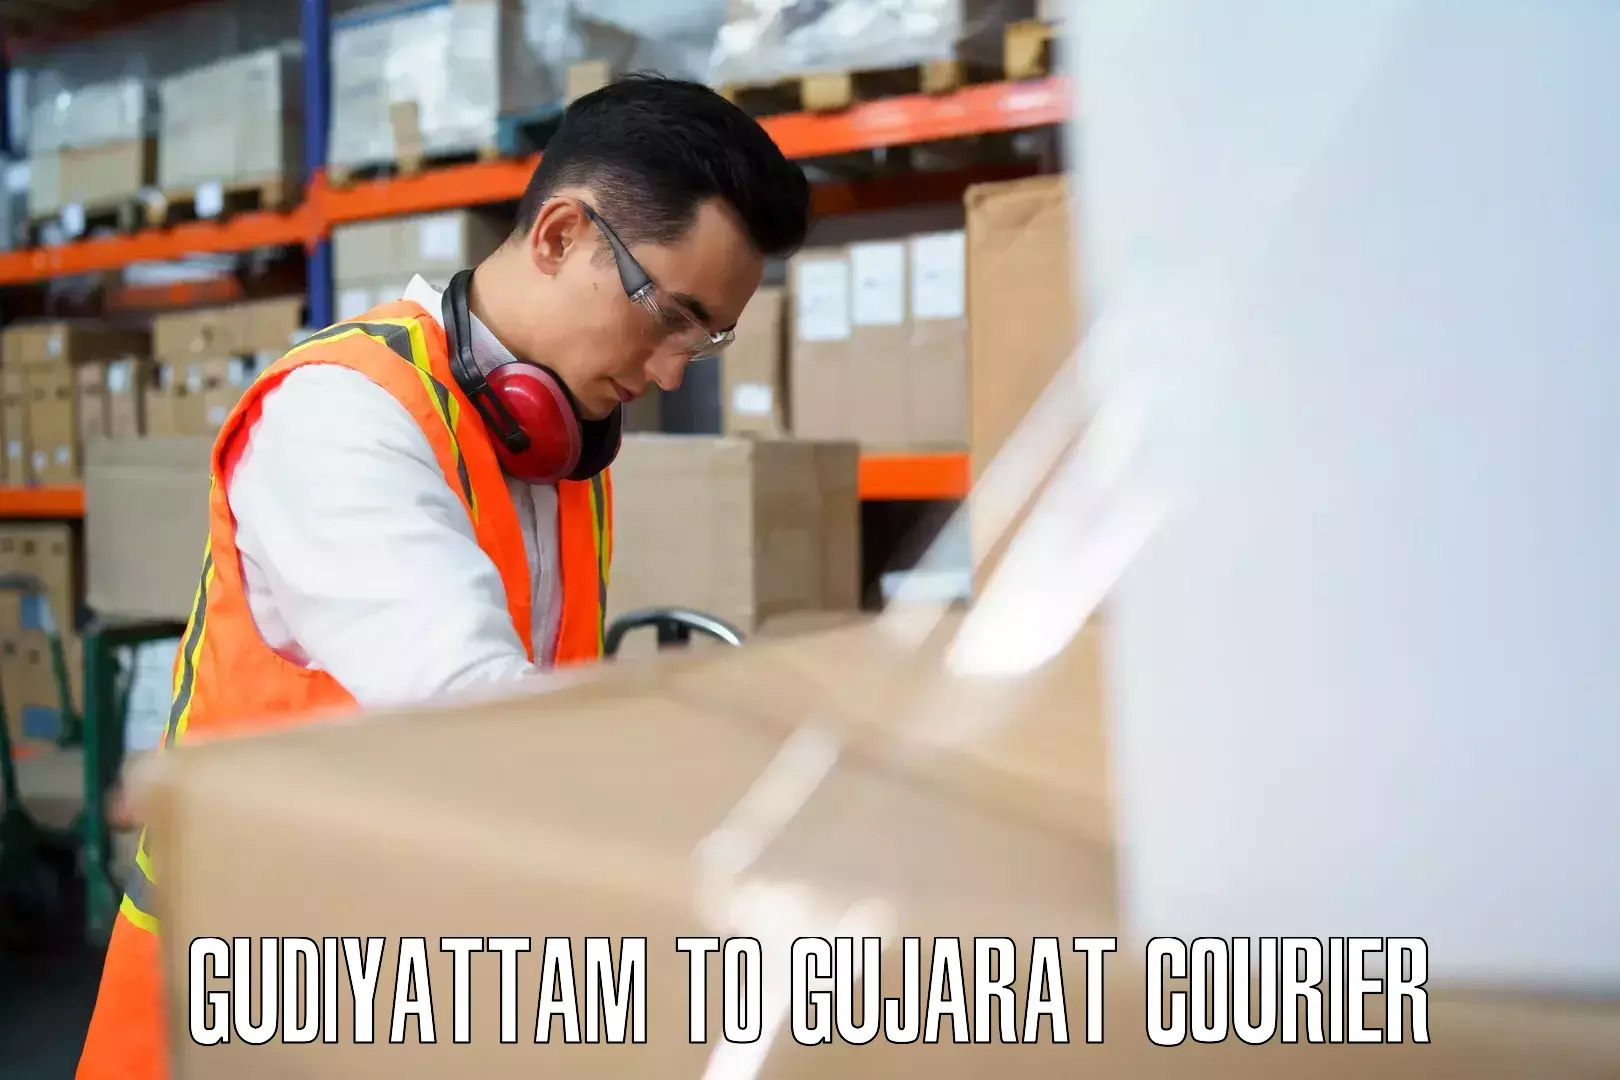 Luggage shipment processing Gudiyattam to Jetpur